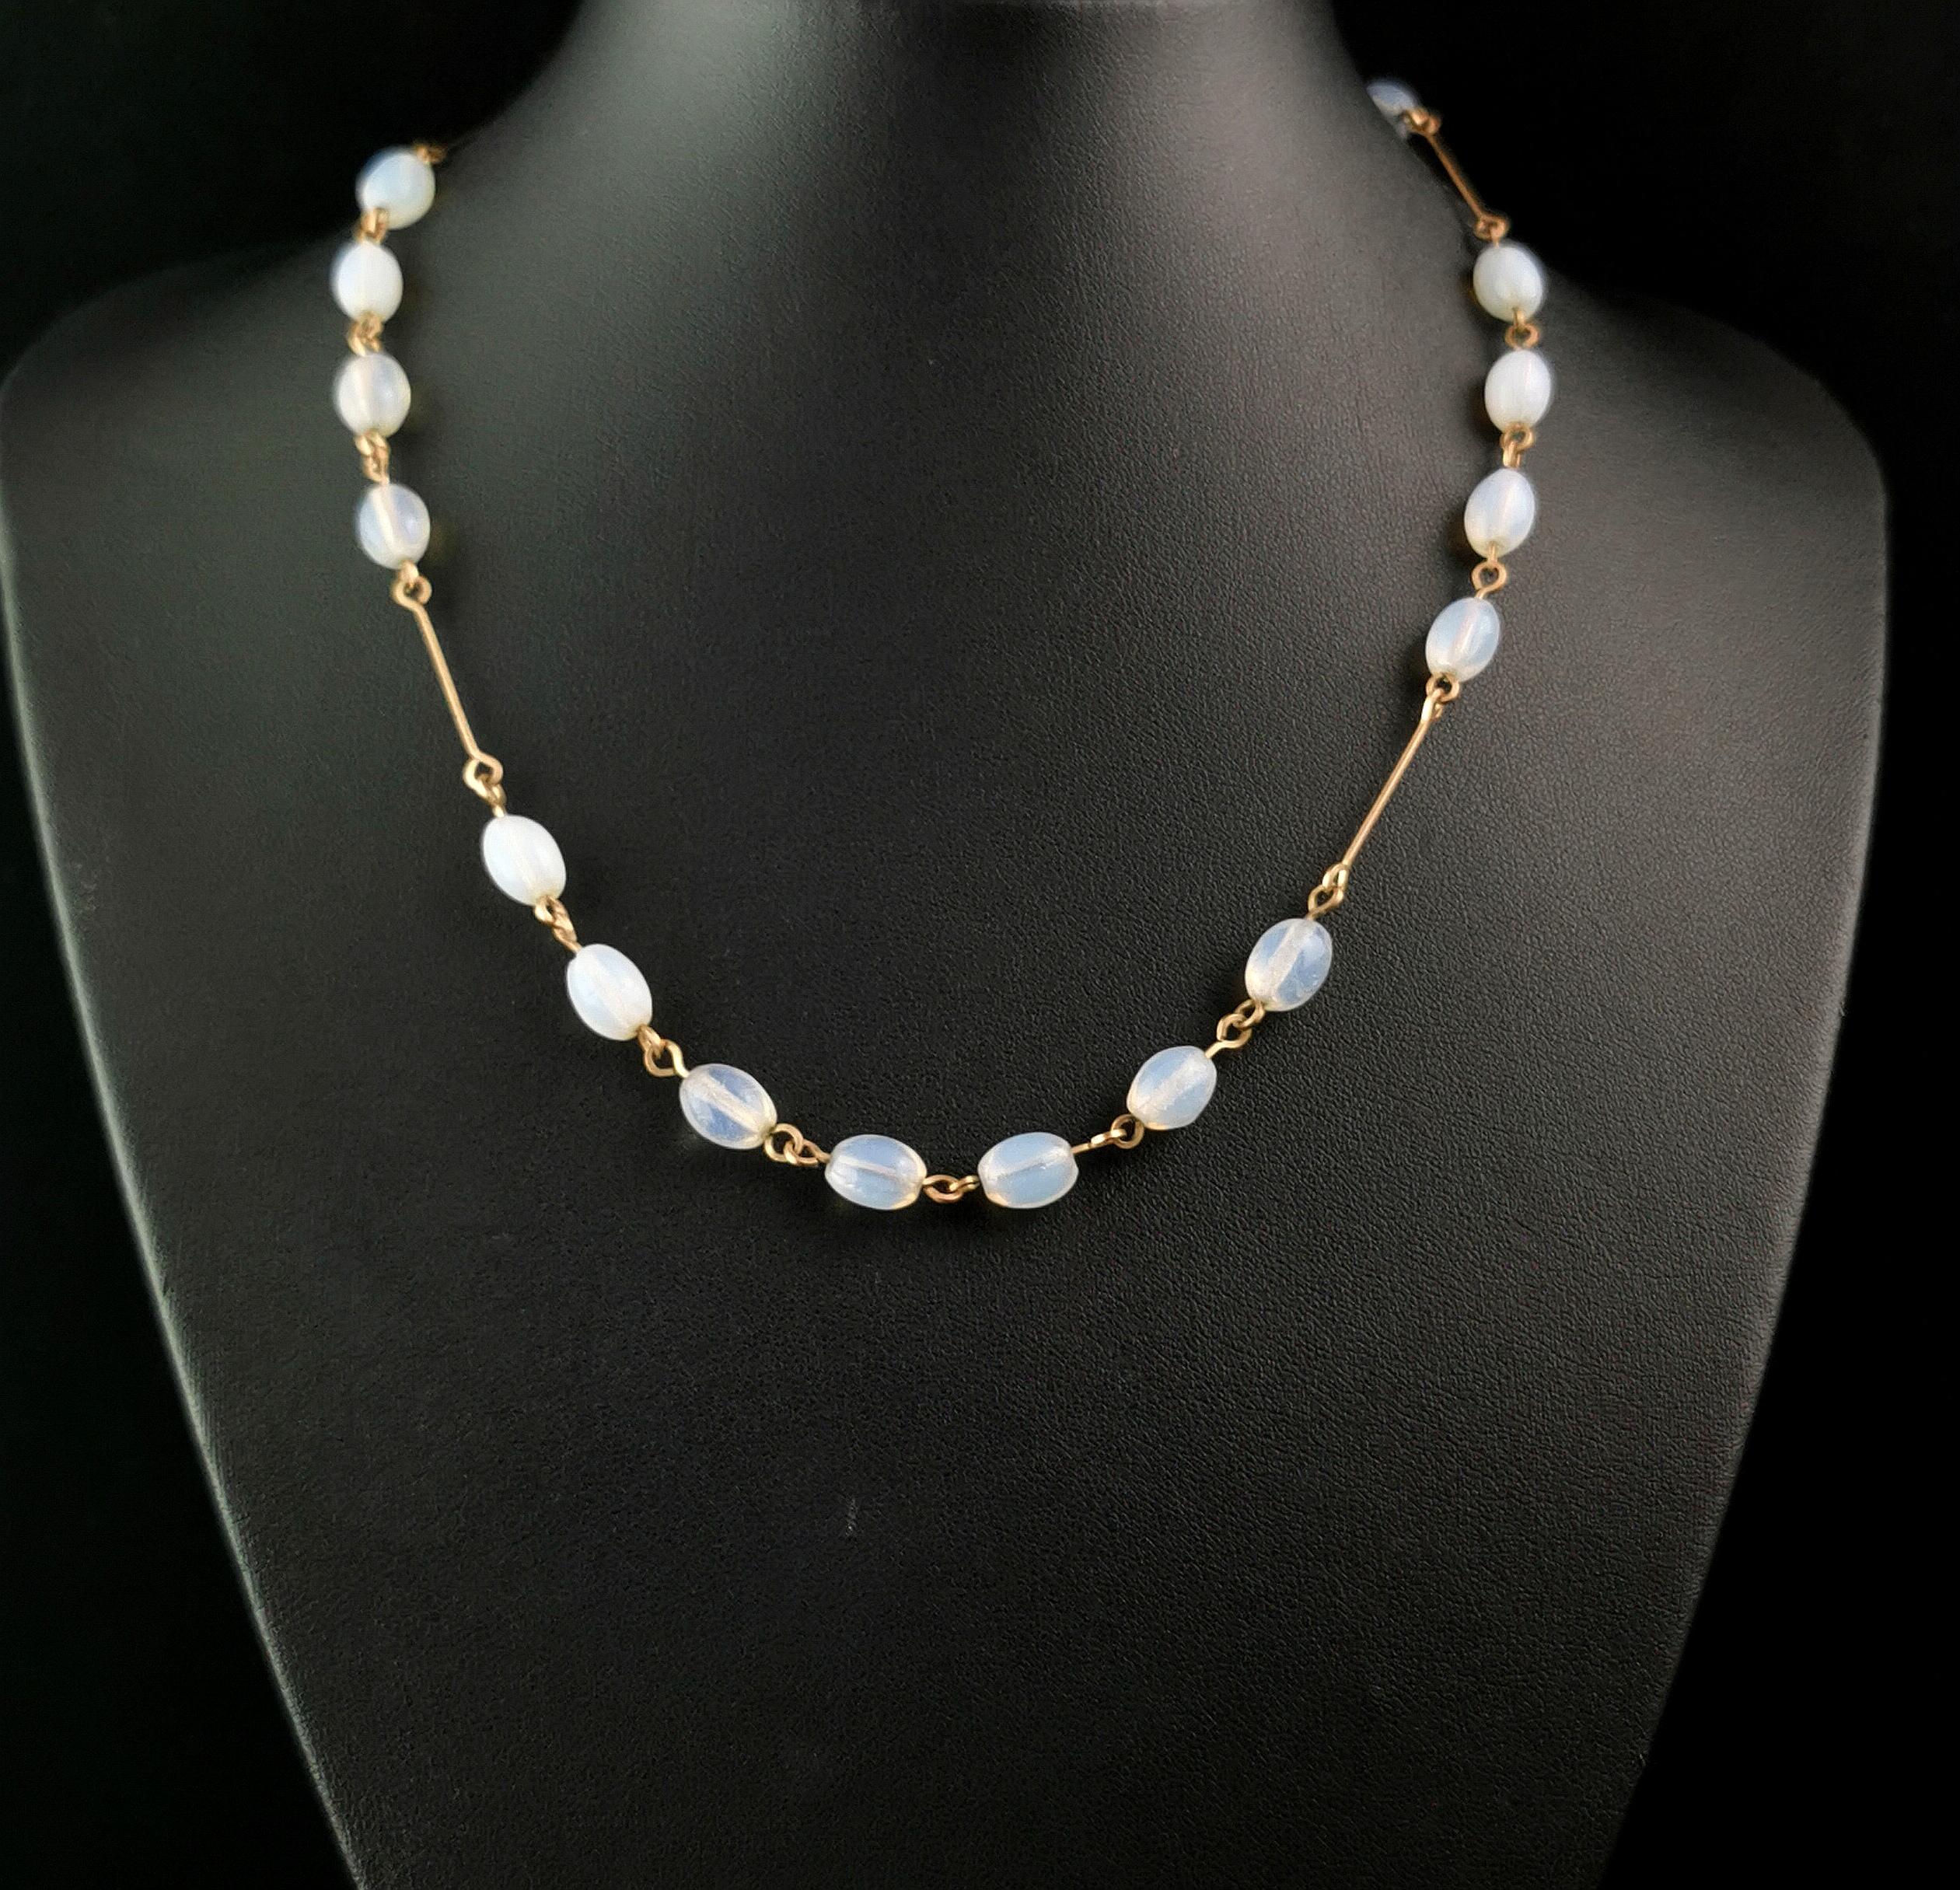 Un magnifique collier vintage Art of Vintage en perles de verre opalin.

Il est composé de perles de verre opalin de forme ovale, légèrement opaques avec une teinte principalement bleue.

Les perles sont fixées à un collier en chaîne plaqué or avec